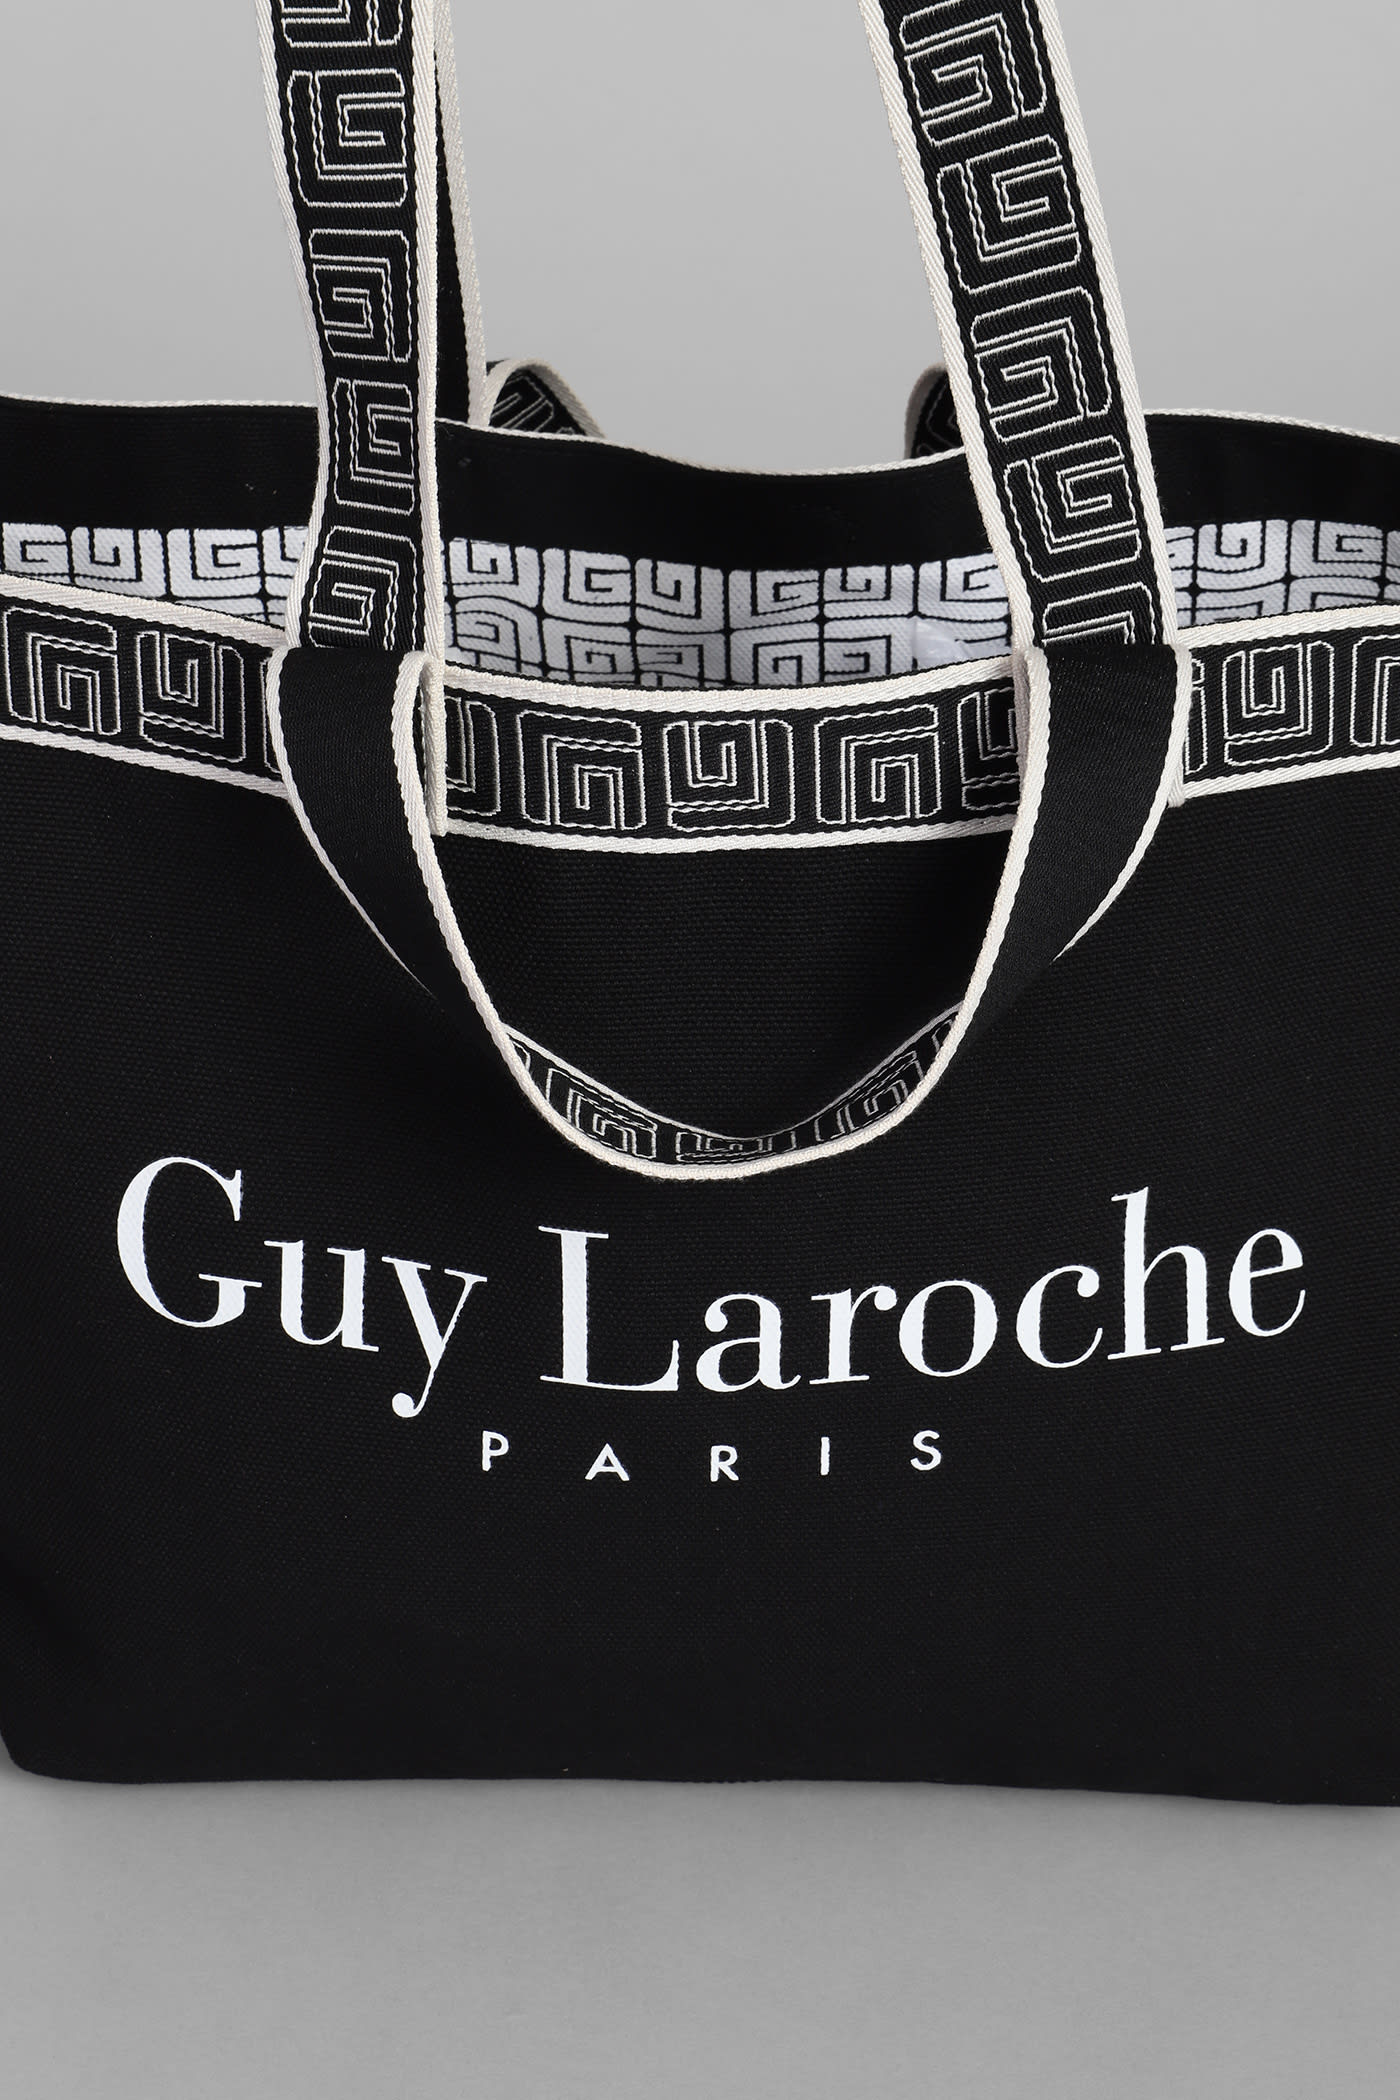 Guy Laroche Large Tote Bag in Black